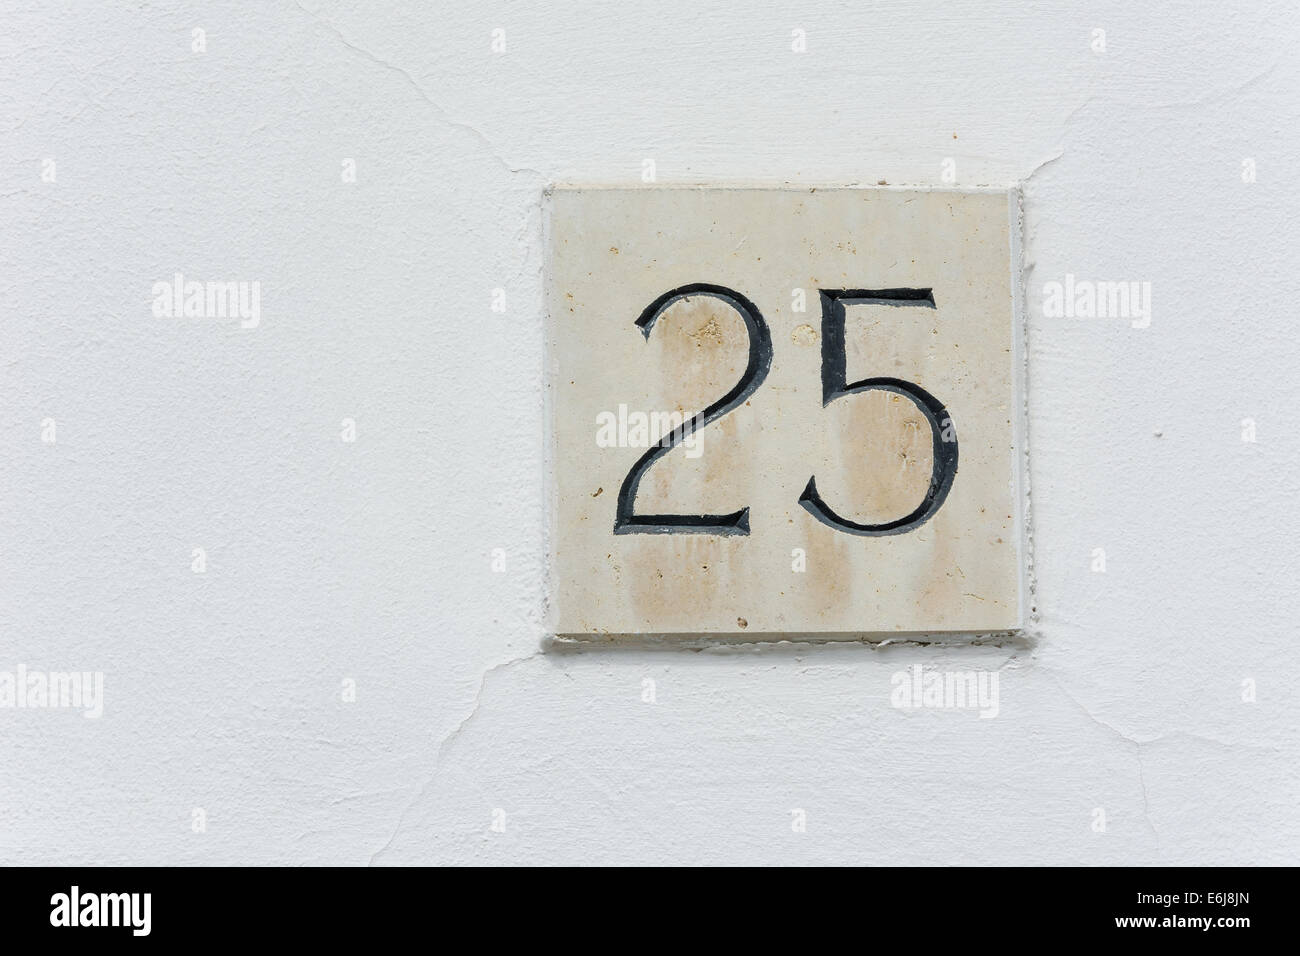 Hausnummer 25 auf eine Steinplatte mit einer grünen Wand-Hintergrund Stockfoto